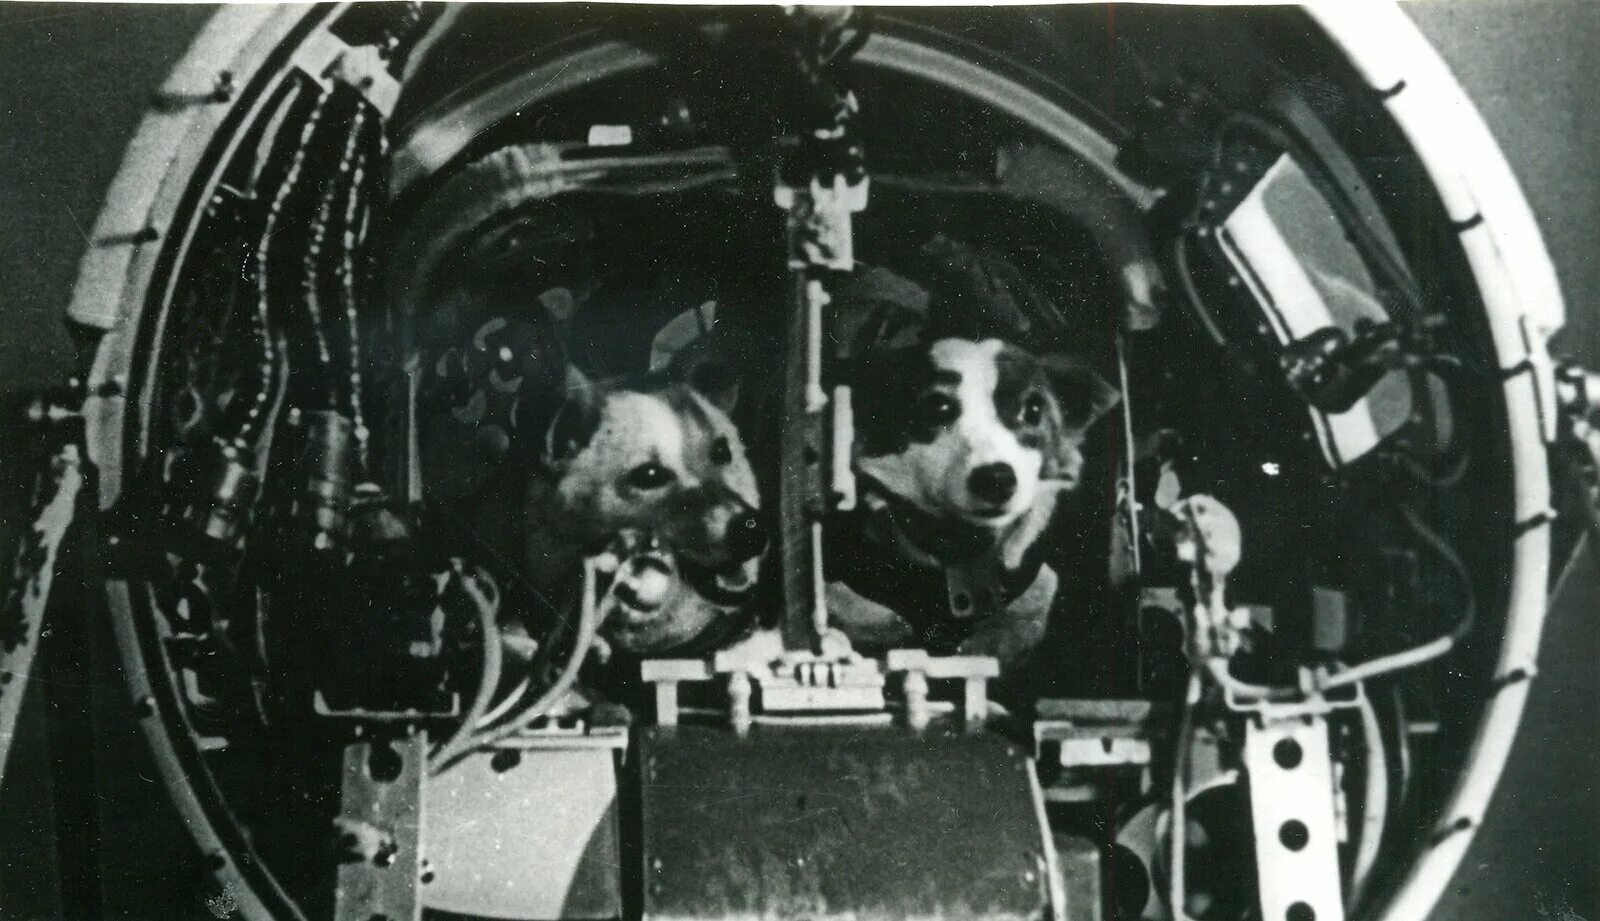 Вернулись ли на землю белка и стрелка. Первый полет в космос собаки белка и стрелка. Белка и стрелка собаки космонавты в космосе. Белка и стрелка 1960. Космический корабль Спутник 5 белка и стрелка.